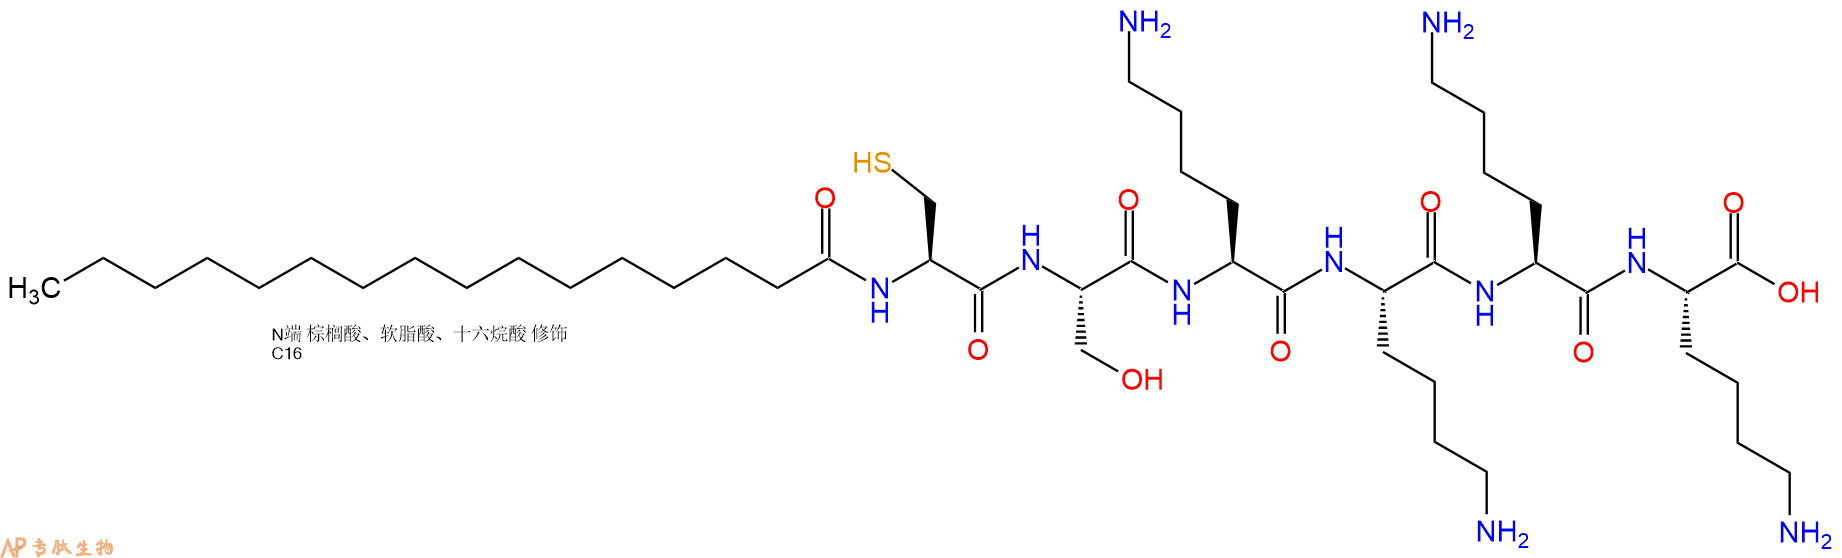 专肽生物产品棕榈酸-Cys-Ser-Lys-Lys-Lys-Lys